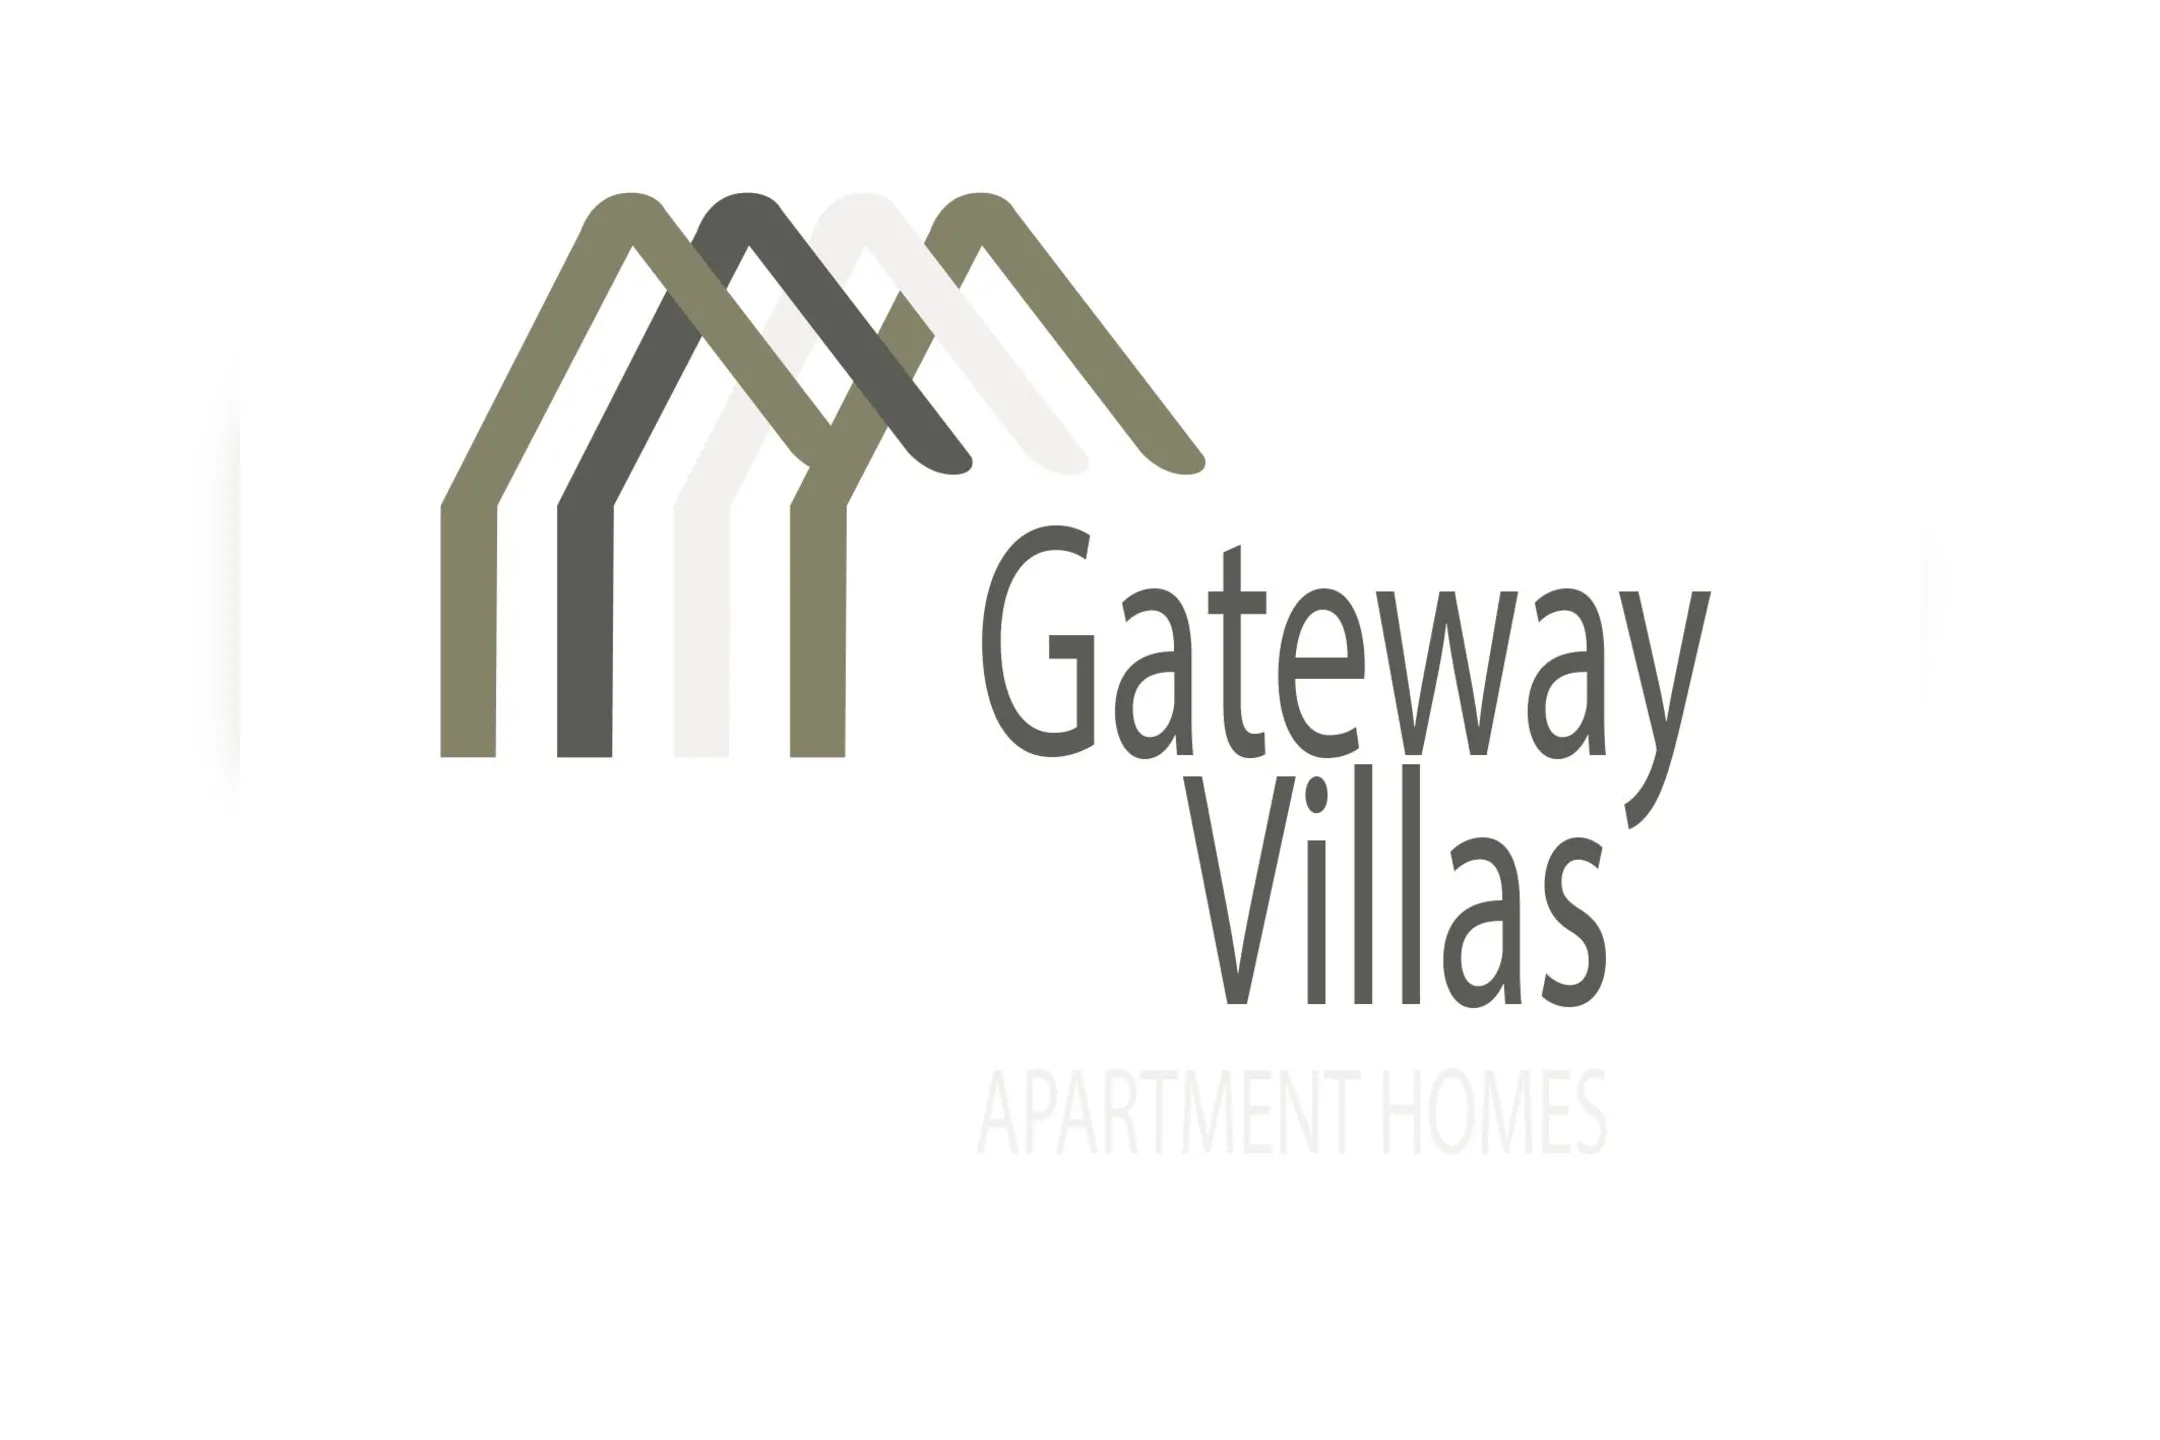 Gateway Villas - Las Vegas, NV